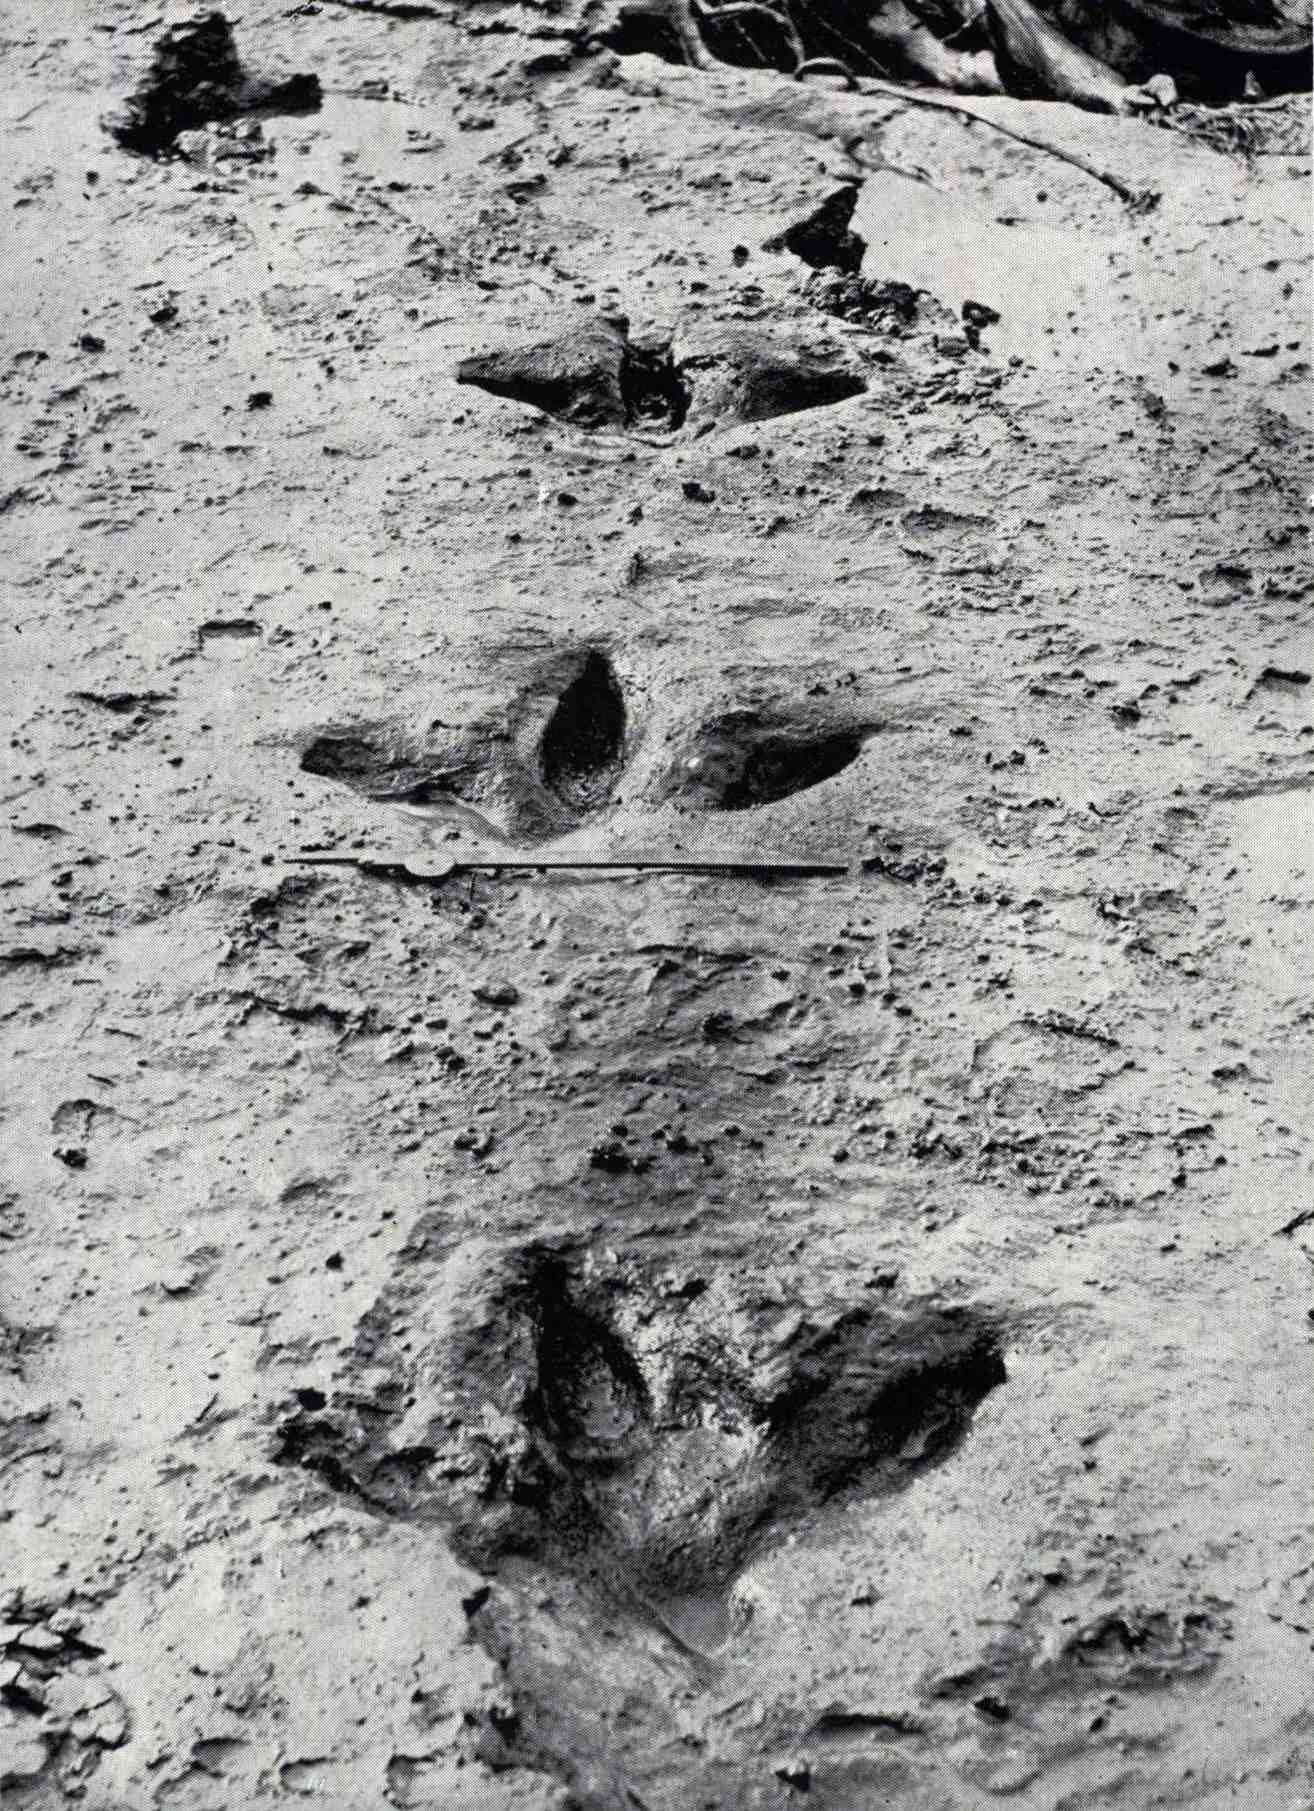 A Dinornis robustus lábnyomai 1911 augusztusában kerültek napvilágra, amikor a Manawatū folyó áradása elsodorta a kék agyagot, amely beborította és megőrizte őket. Azt mutatják, hogy a moa-nak három erős elülső lábujja volt, és a legtöbb más futómadaraktól eltérően egy kicsi hátsó lábujja.